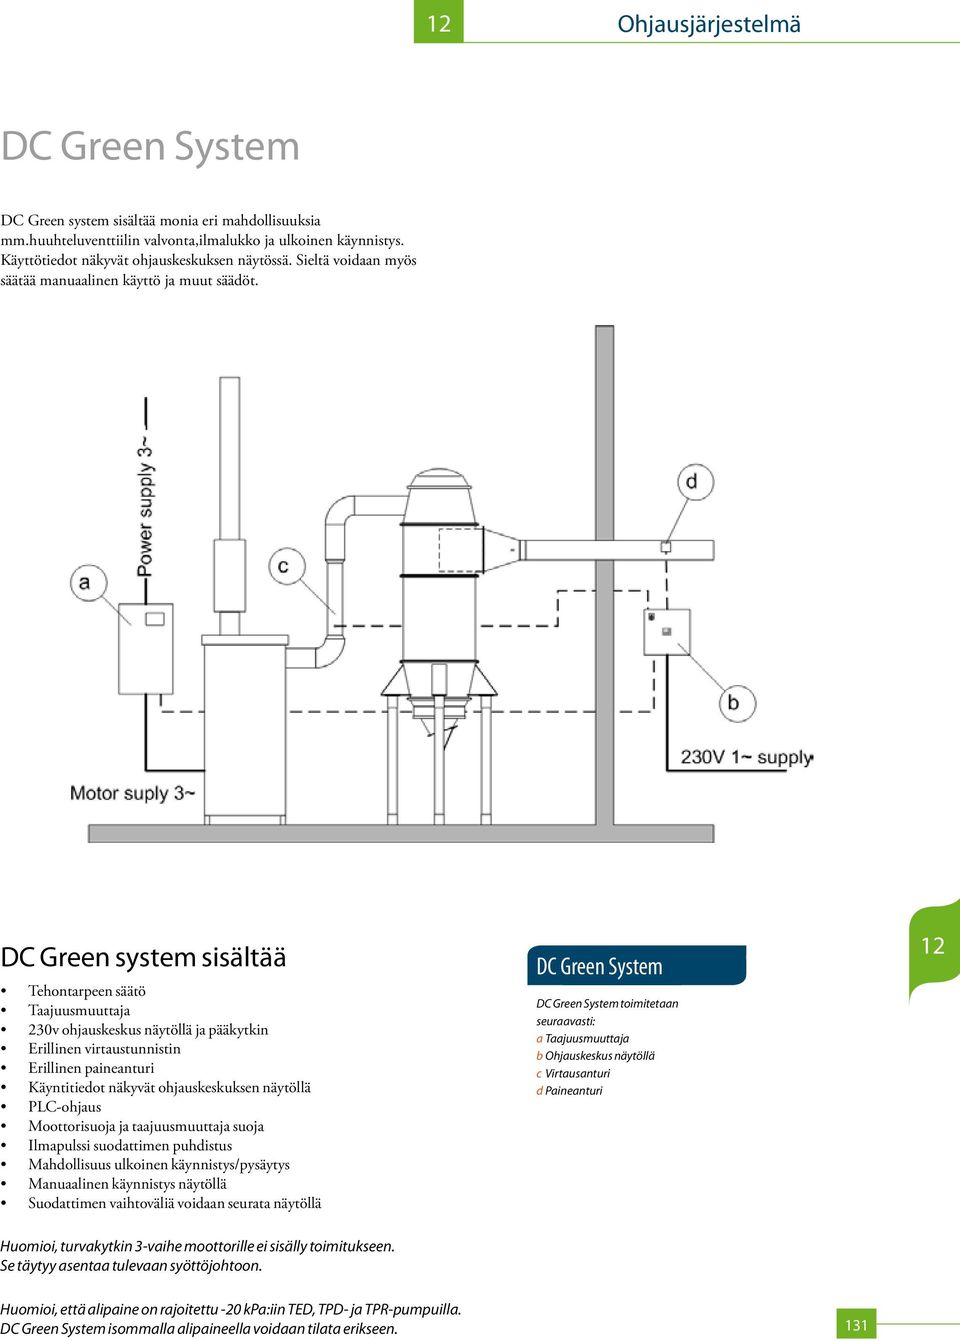 DC Green system sisältää Tehontarpeen säätö Taajuusmuuttaja 230v ohjauskeskus näytöllä ja pääkytkin Erillinen virtaustunnistin Erillinen paineanturi Käyntitiedot näkyvät ohjauskeskuksen näytöllä